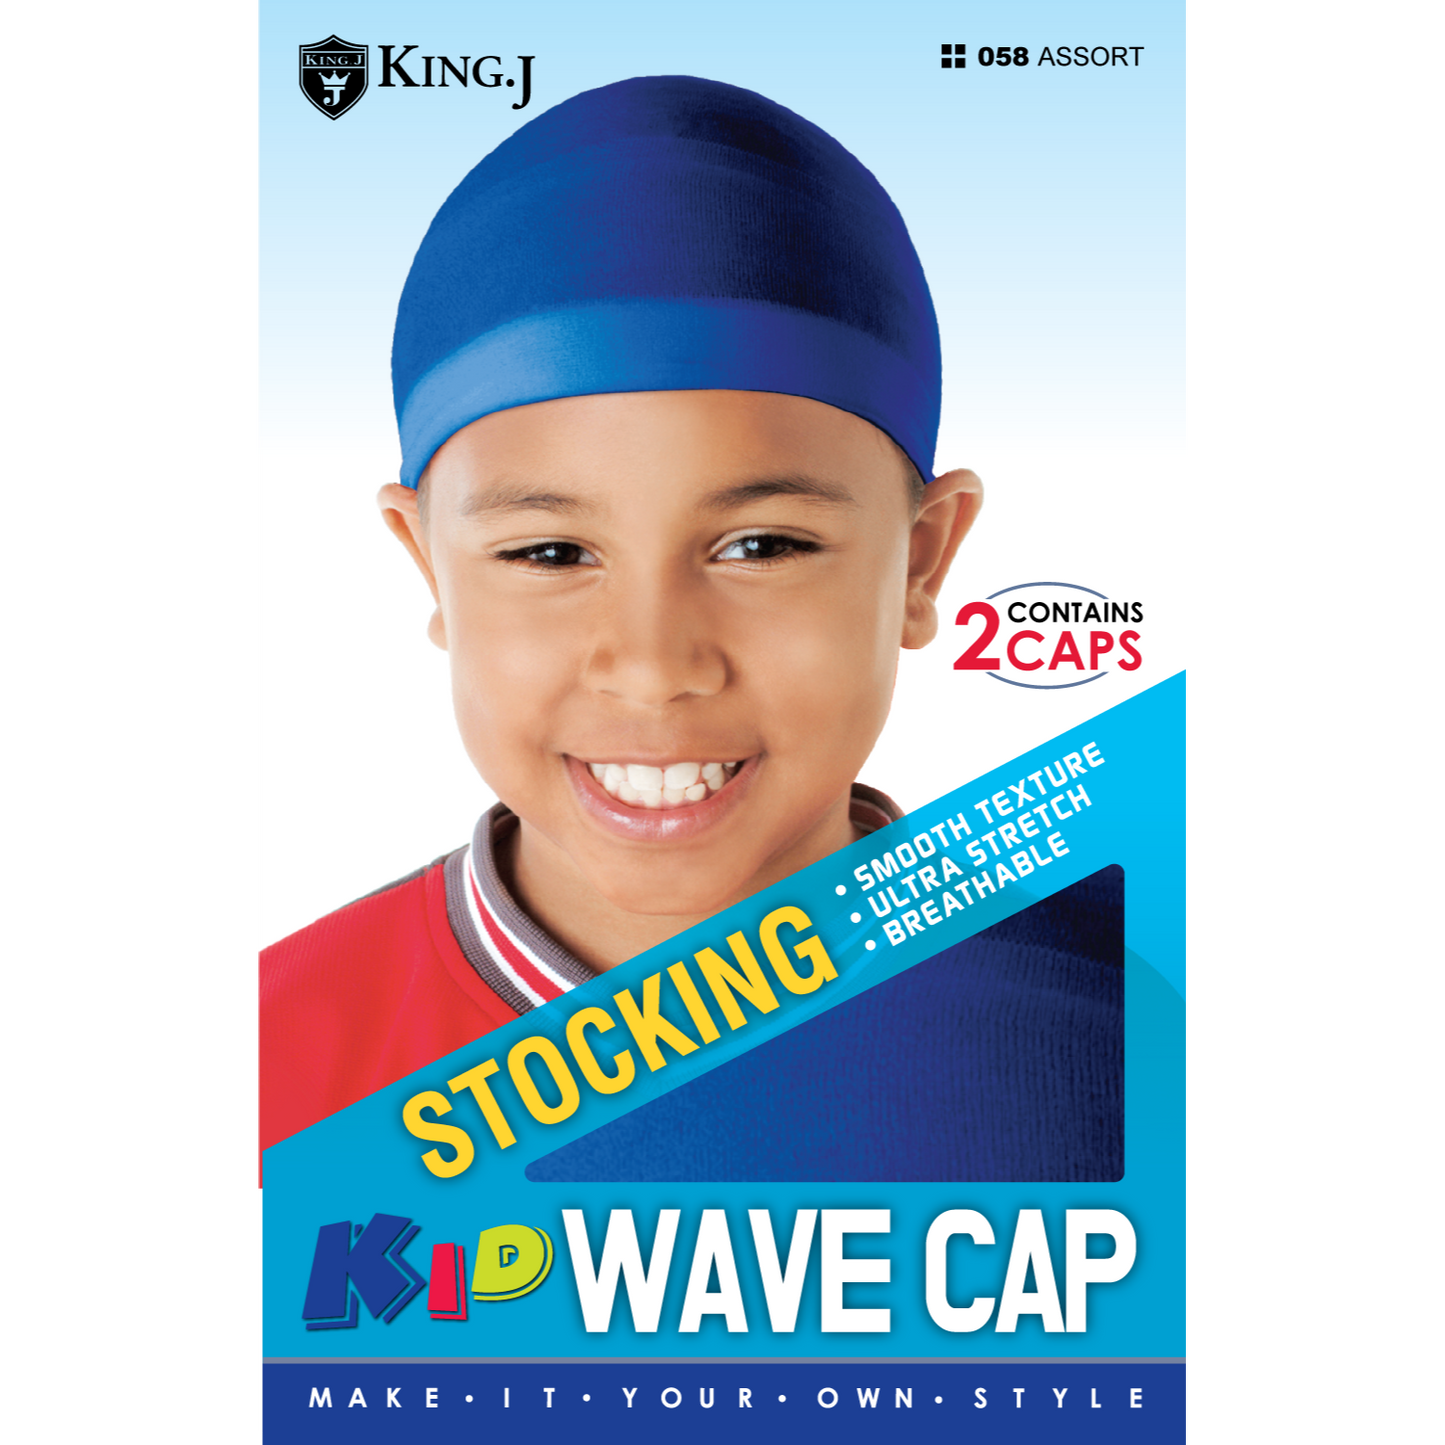 KIDS STOCKING WAVE CAP